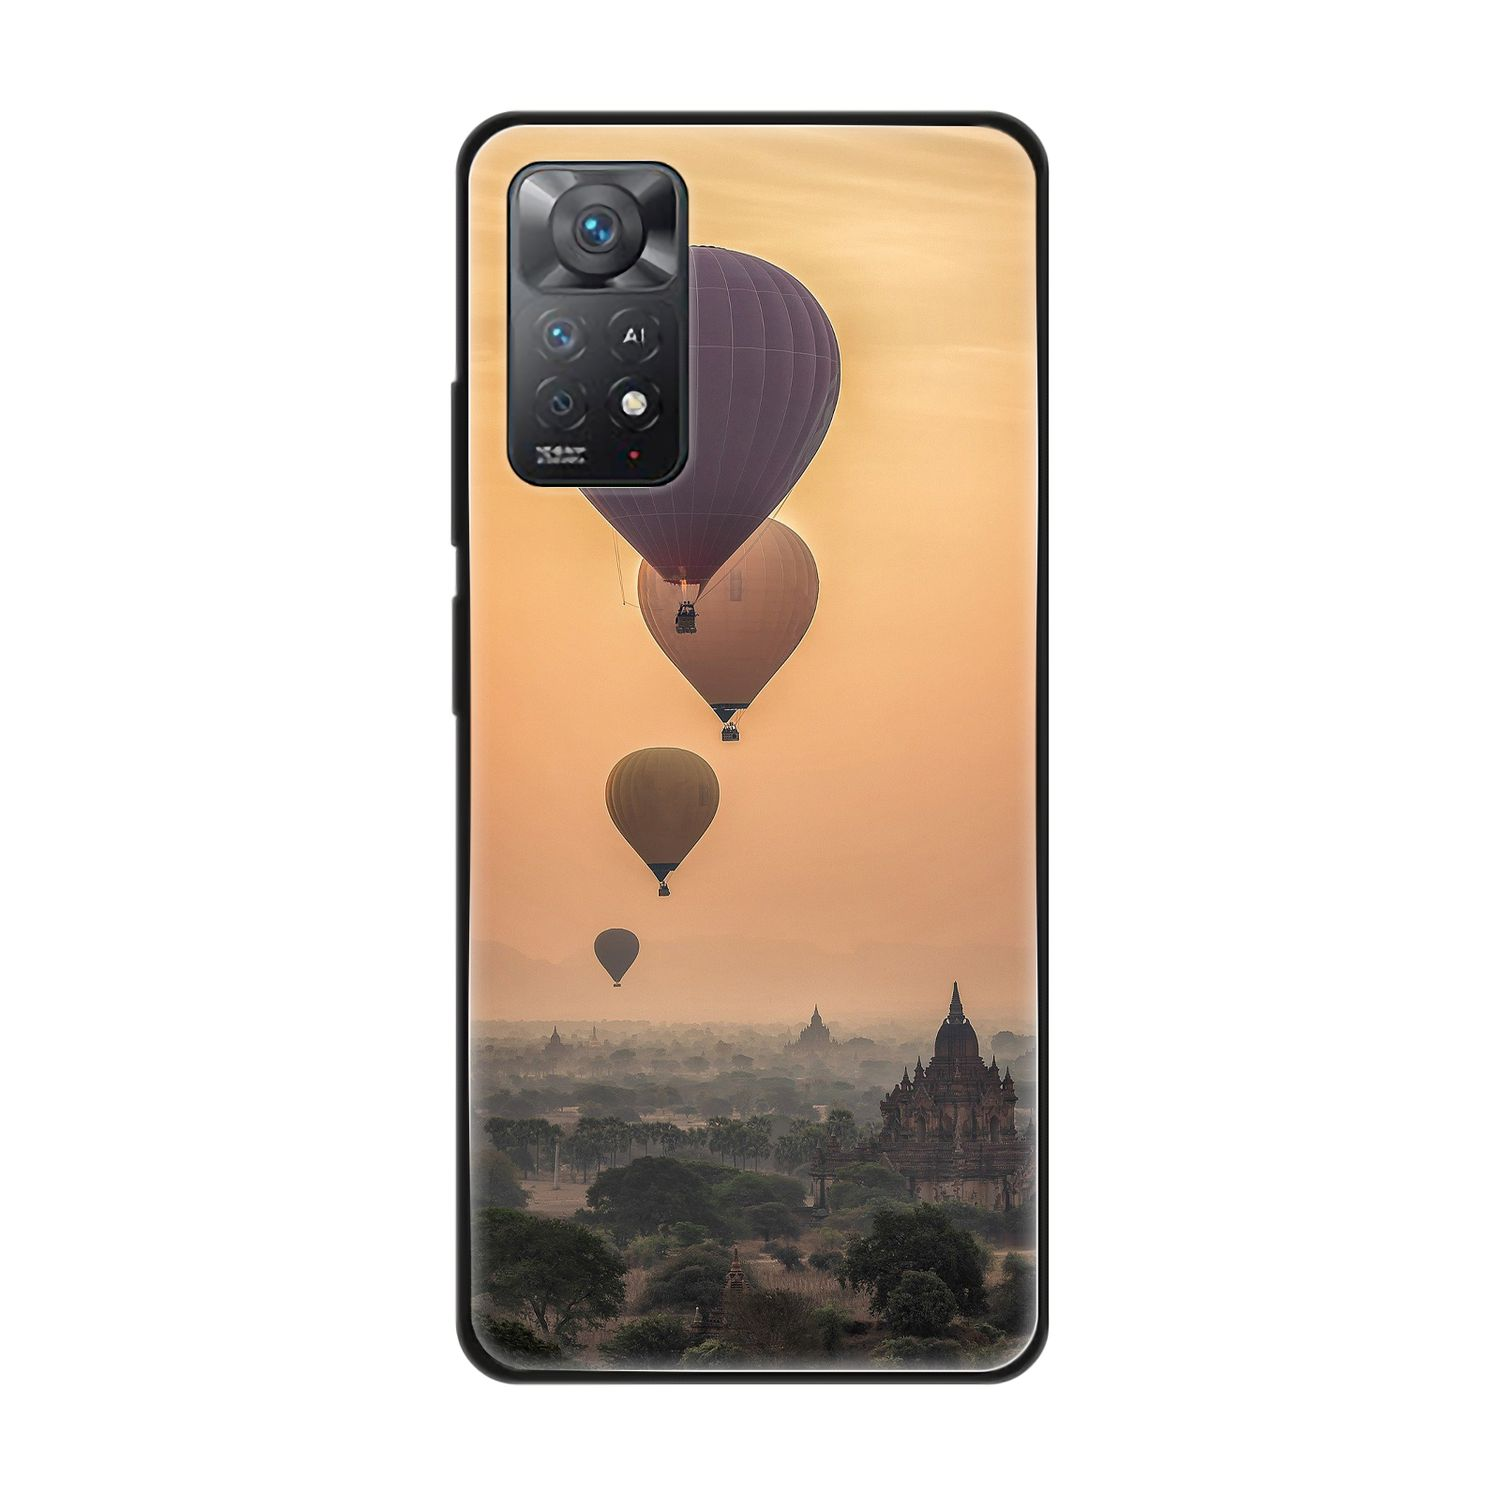 KÖNIG DESIGN Case, Note Pro, Heißluftballons Redmi Backcover, 11E Xiaomi